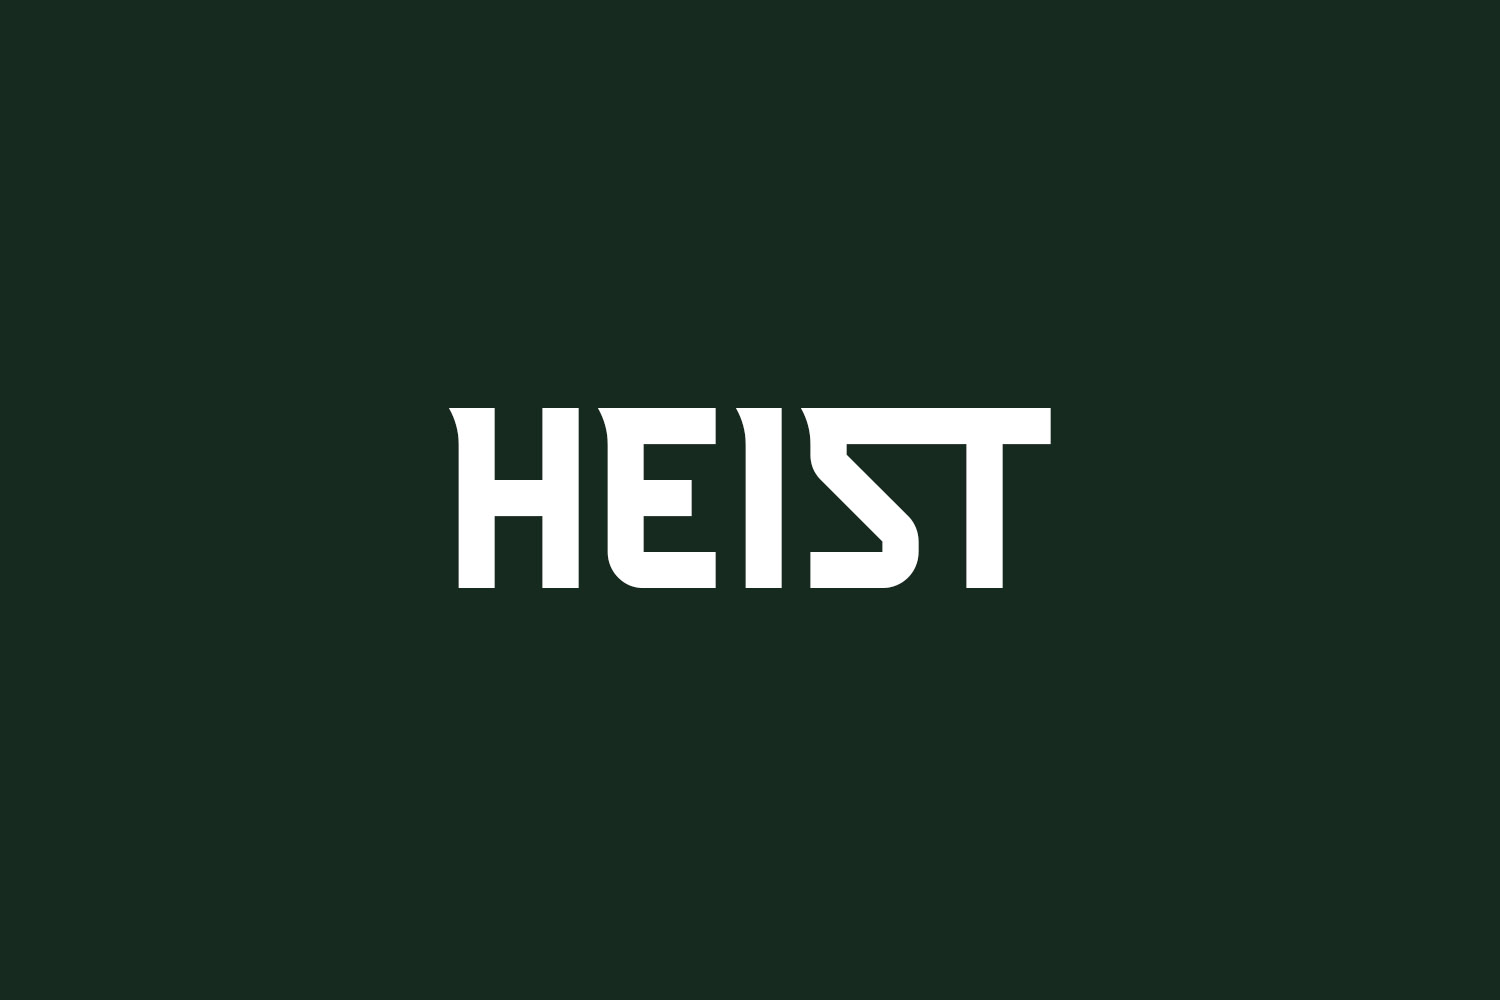 Heist Free Font